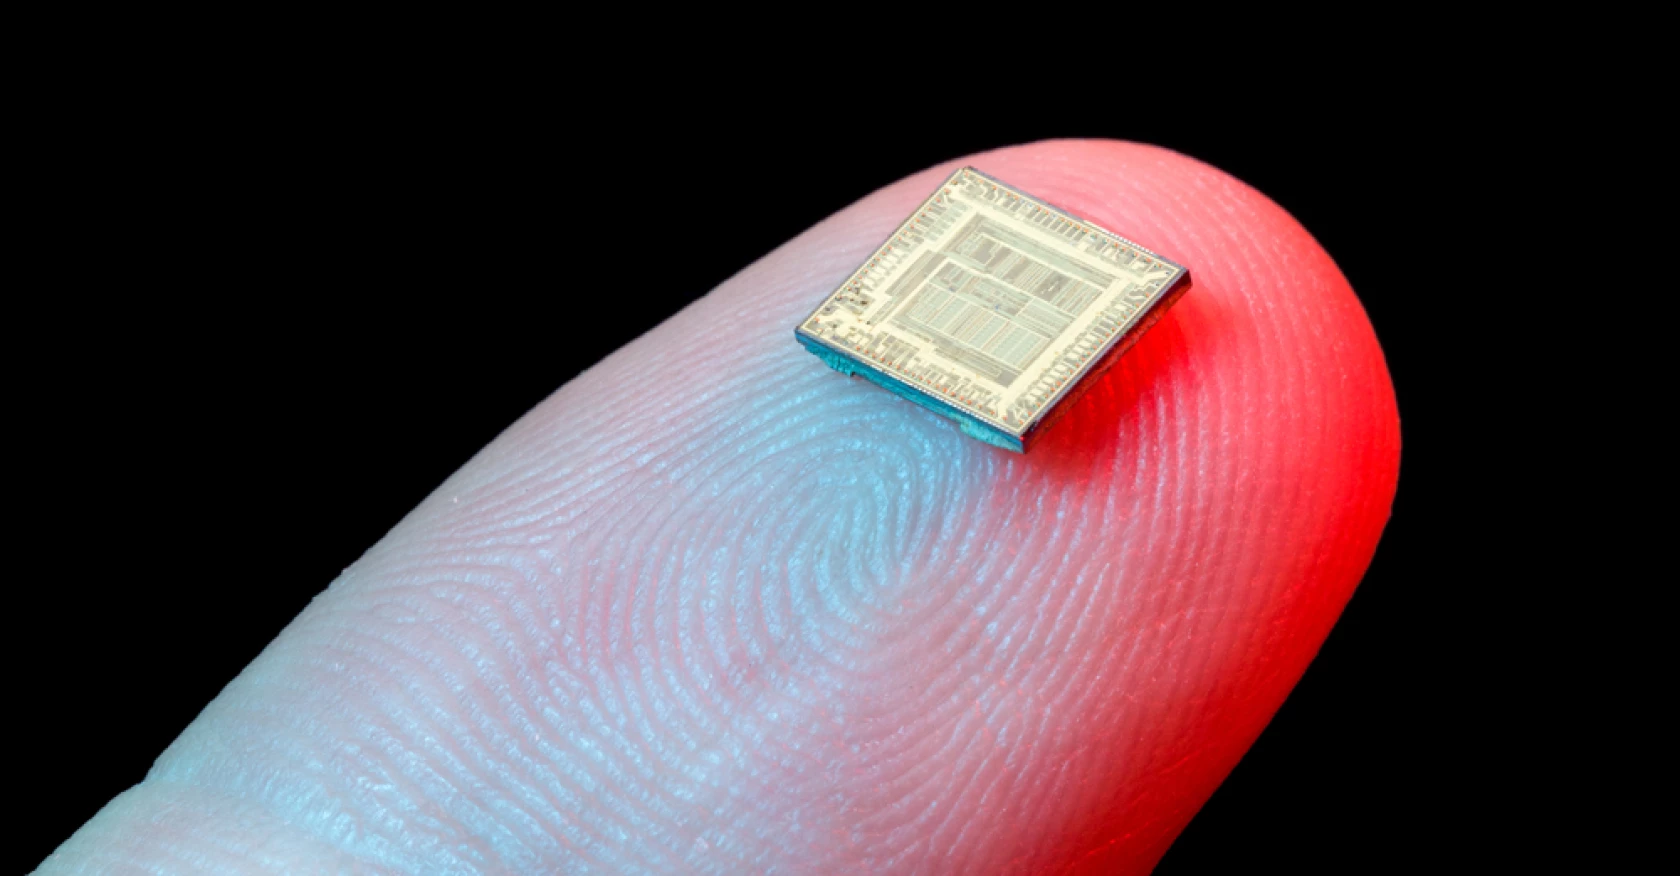 microchip on finger